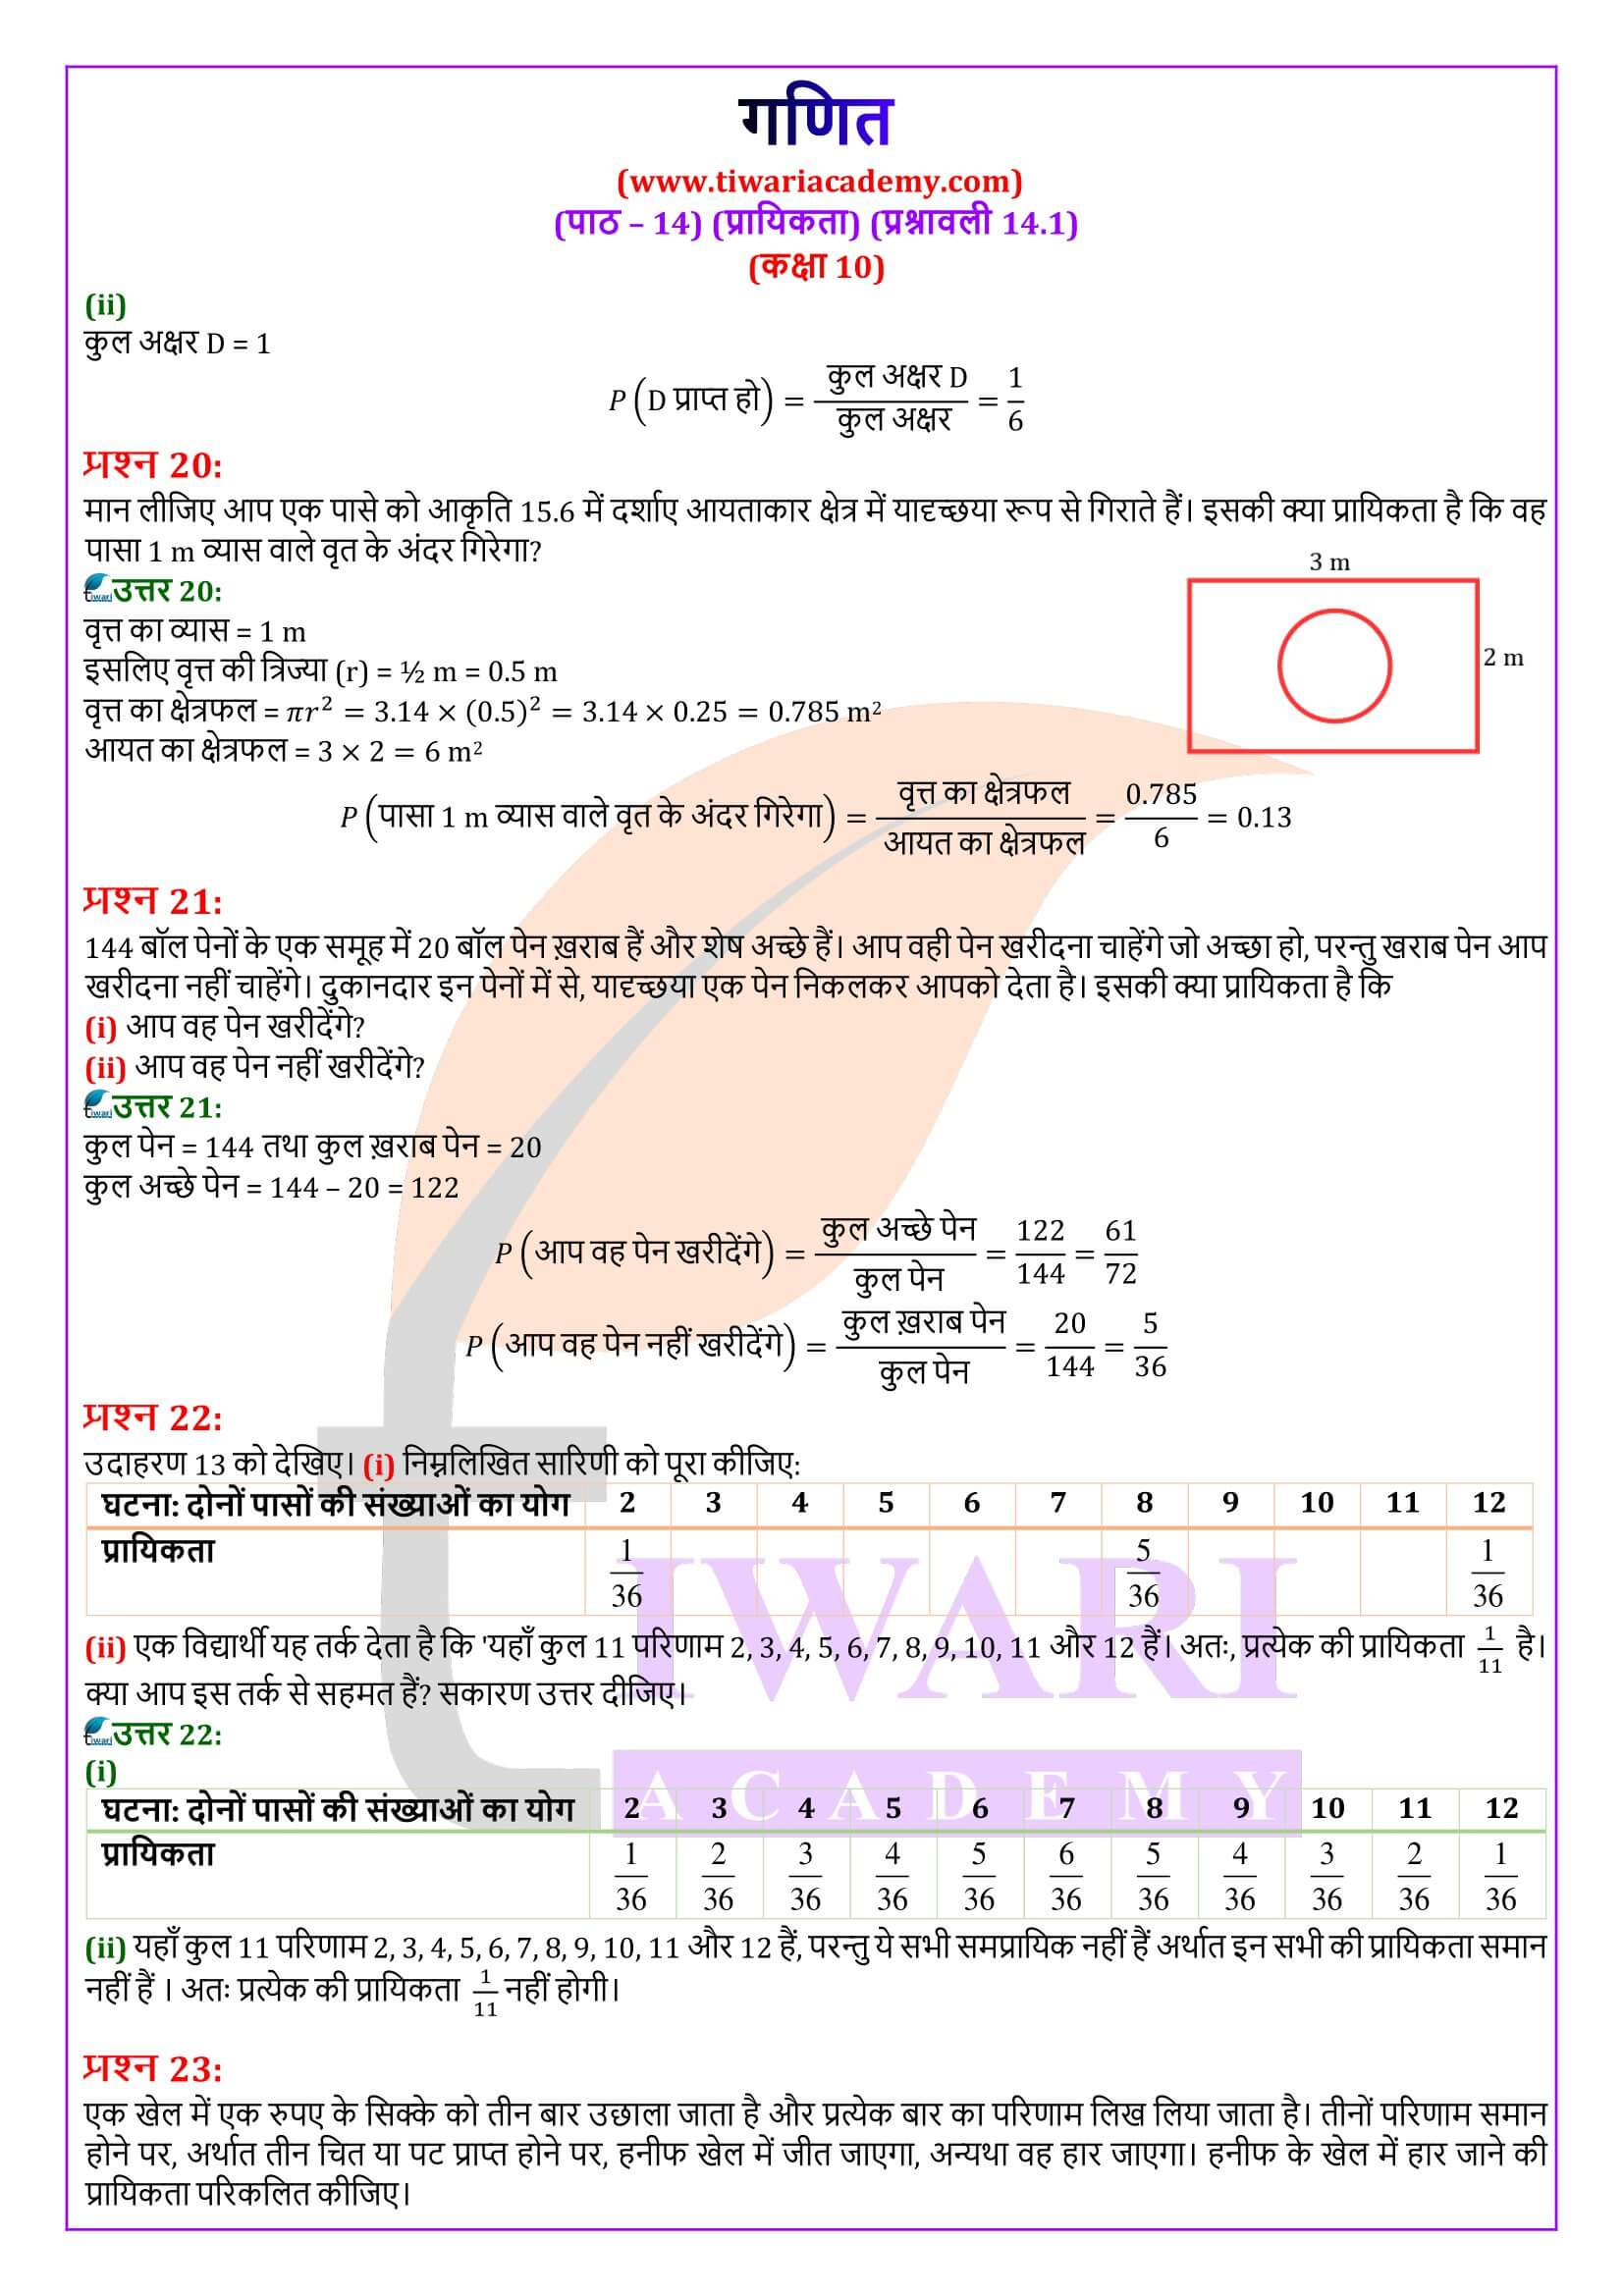 कक्षा 10 गणित प्रश्नावली 14.1 गाइड हिंदी मीडियम में